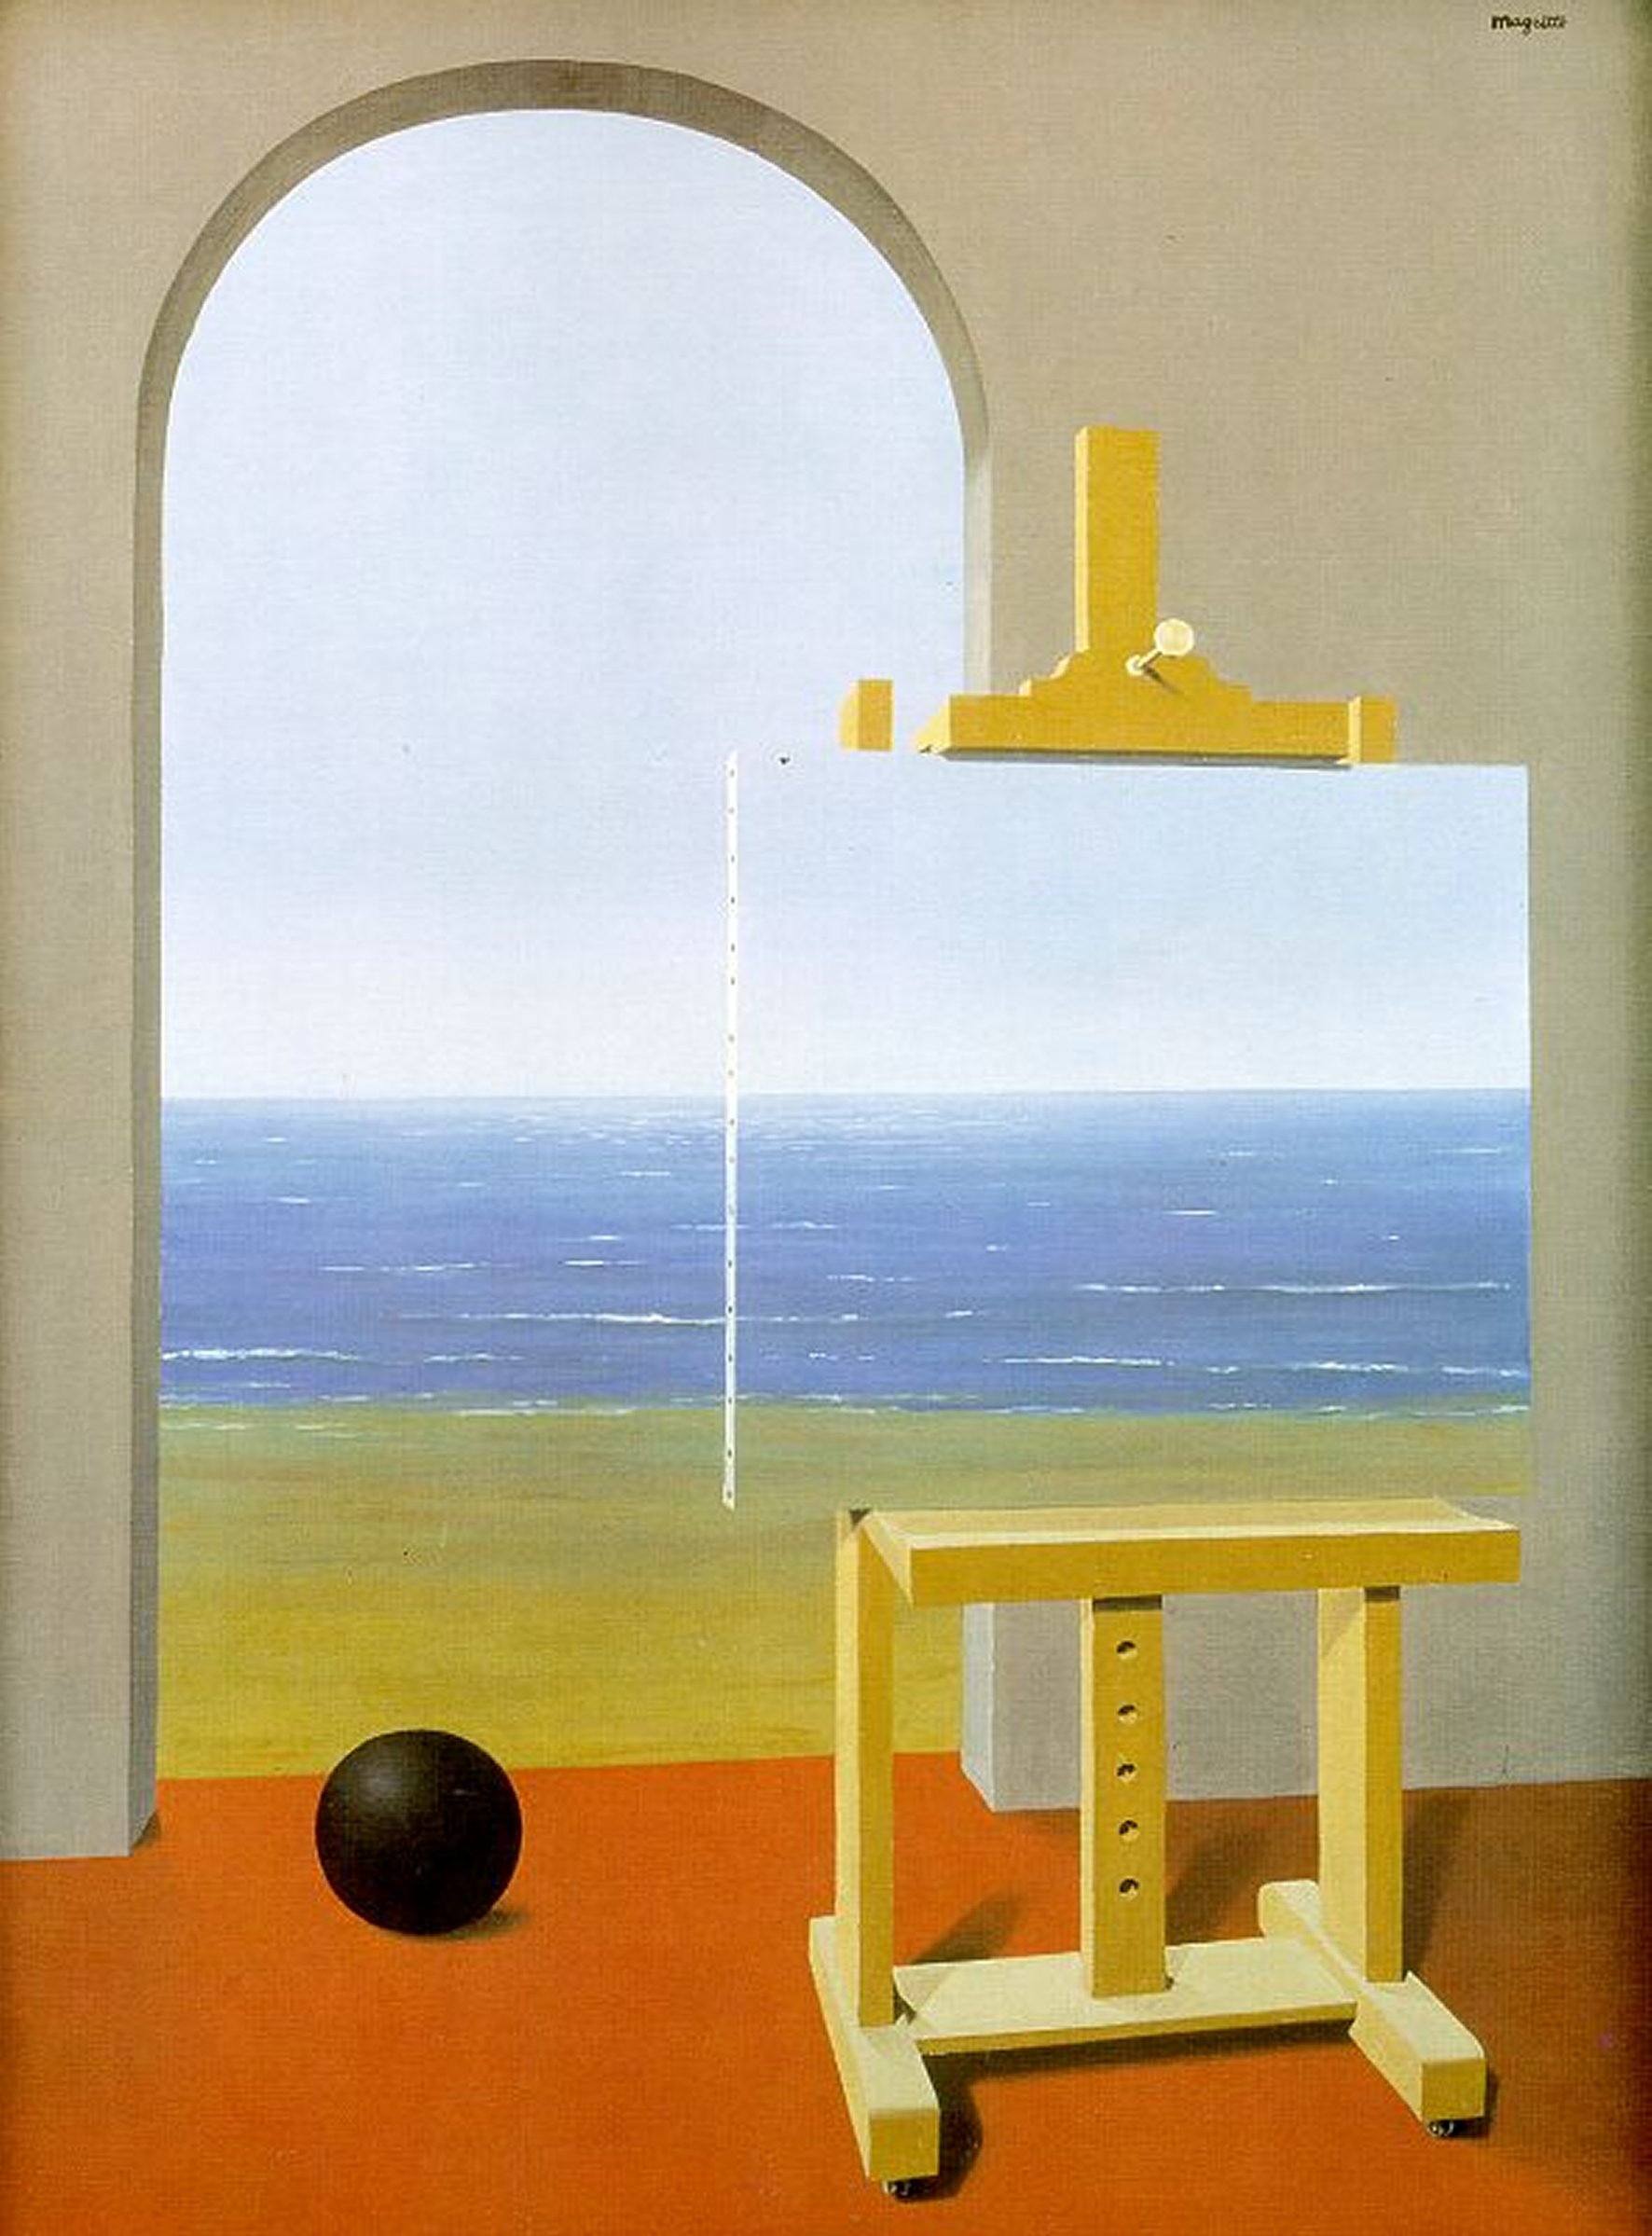 René Magritte, “La condición humana”. Óleo sobre tela, 1935